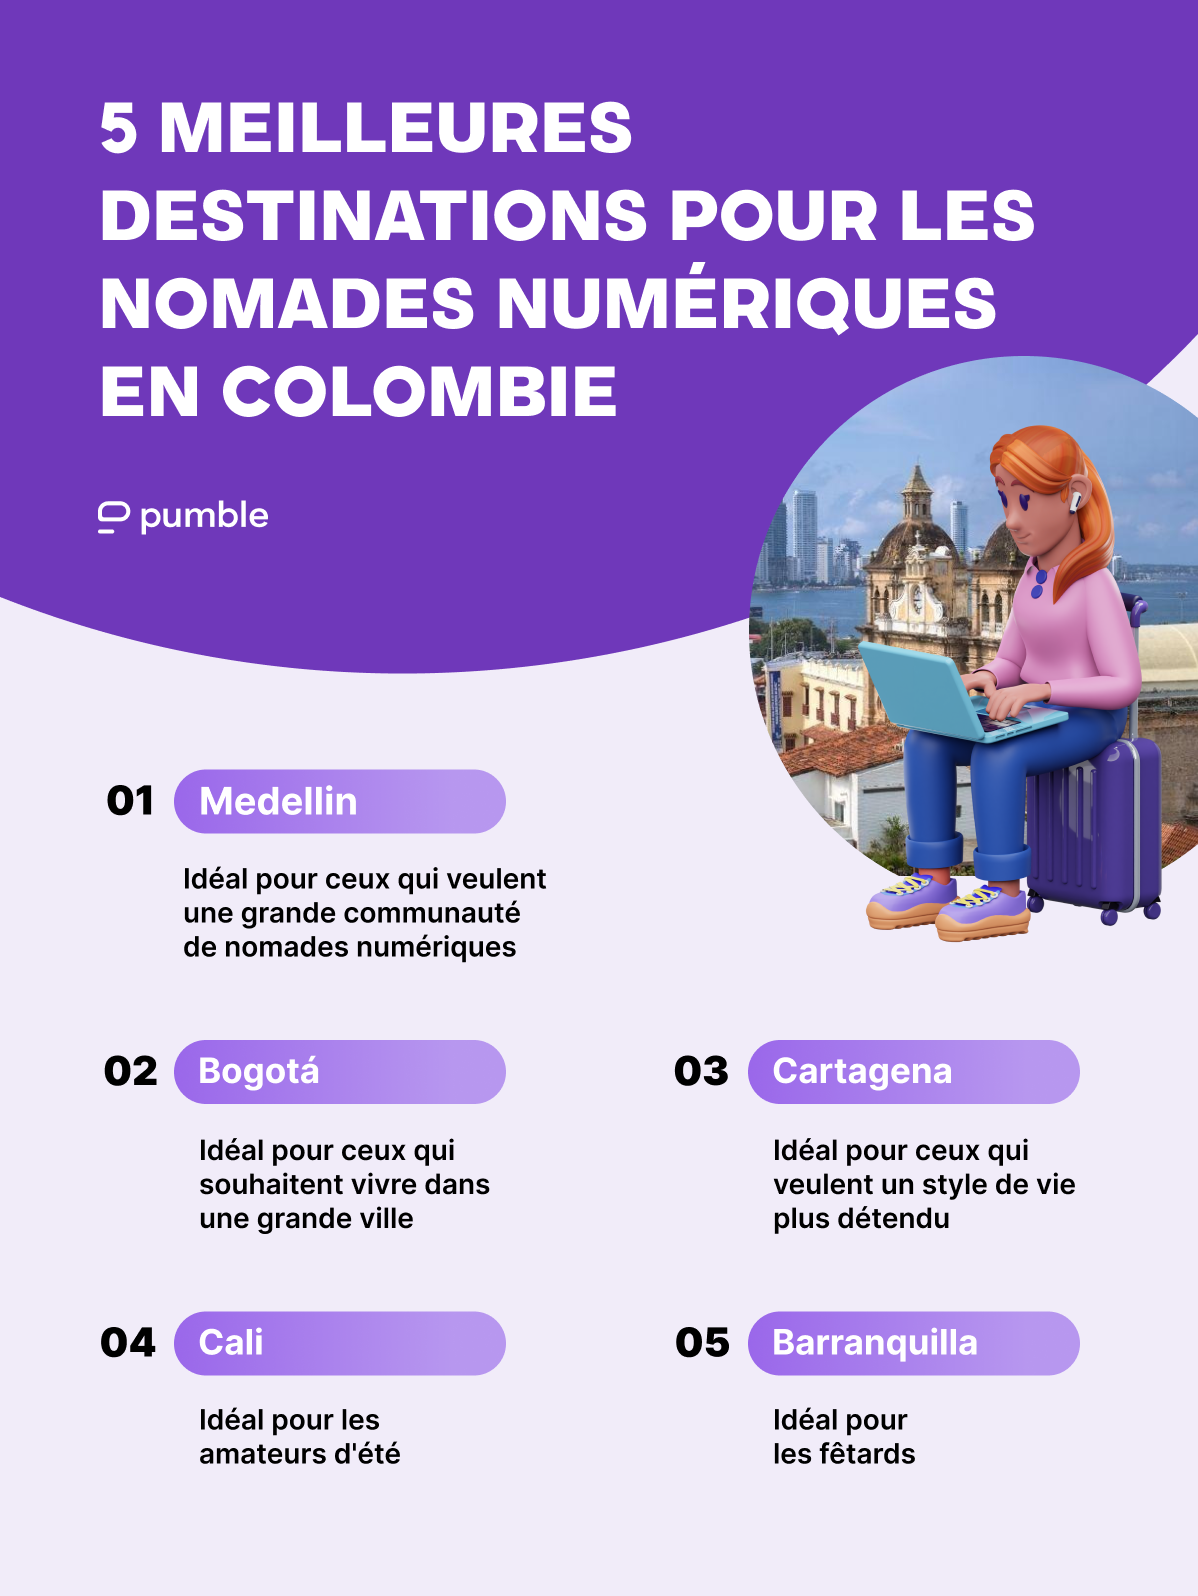 Les 5 meilleures destinations pour les nomades numériques en Colombie